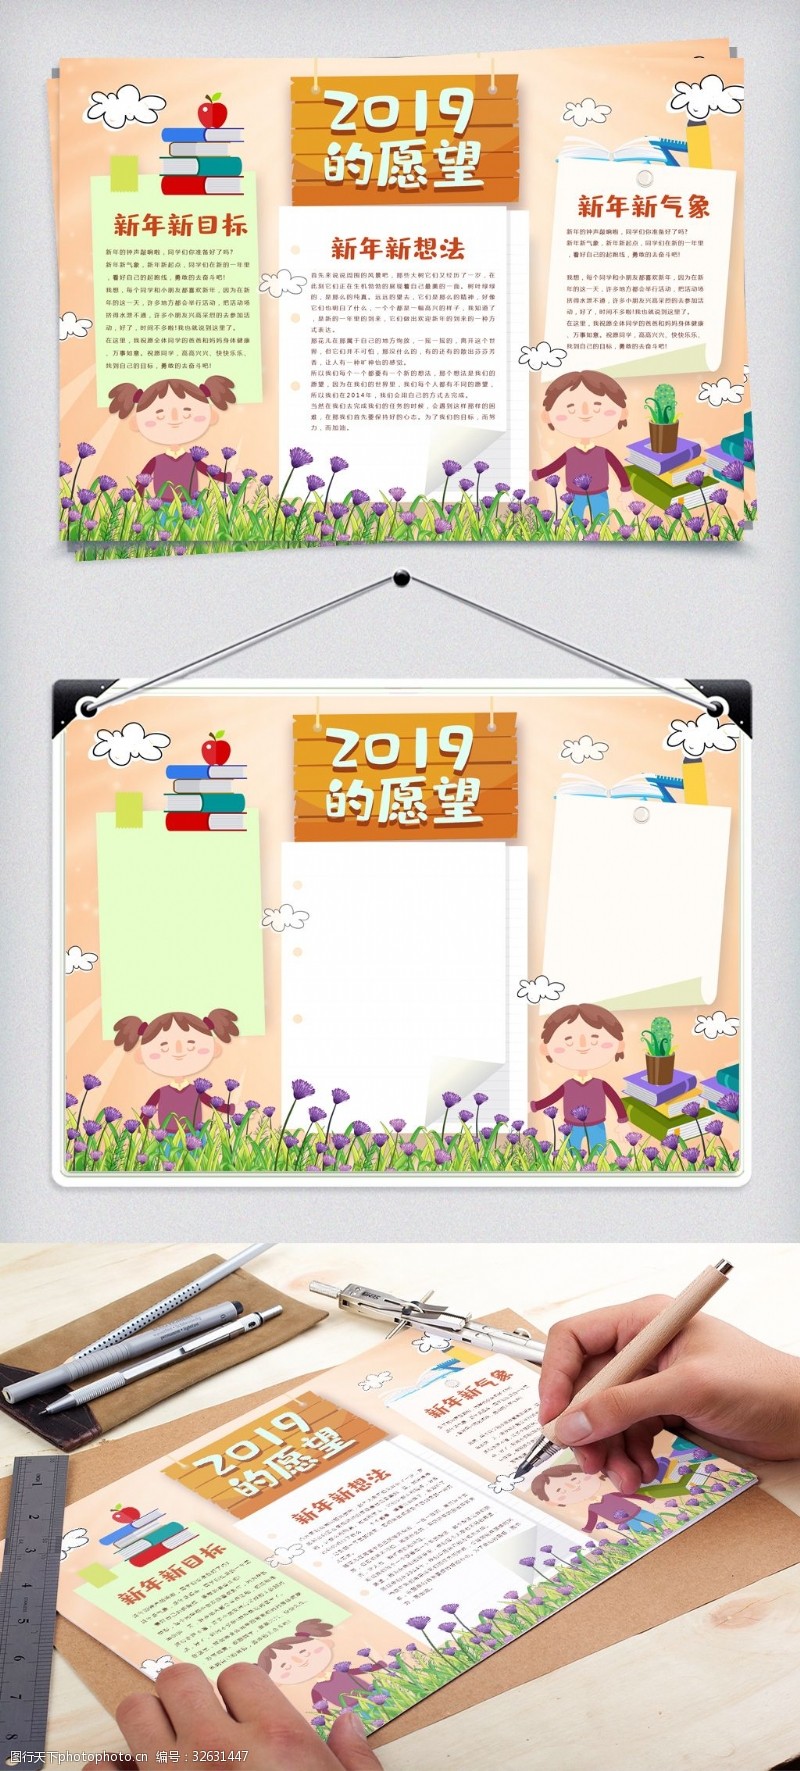 元旦快乐模板下载2019年的愿望可爱卡通电子小报模板下载